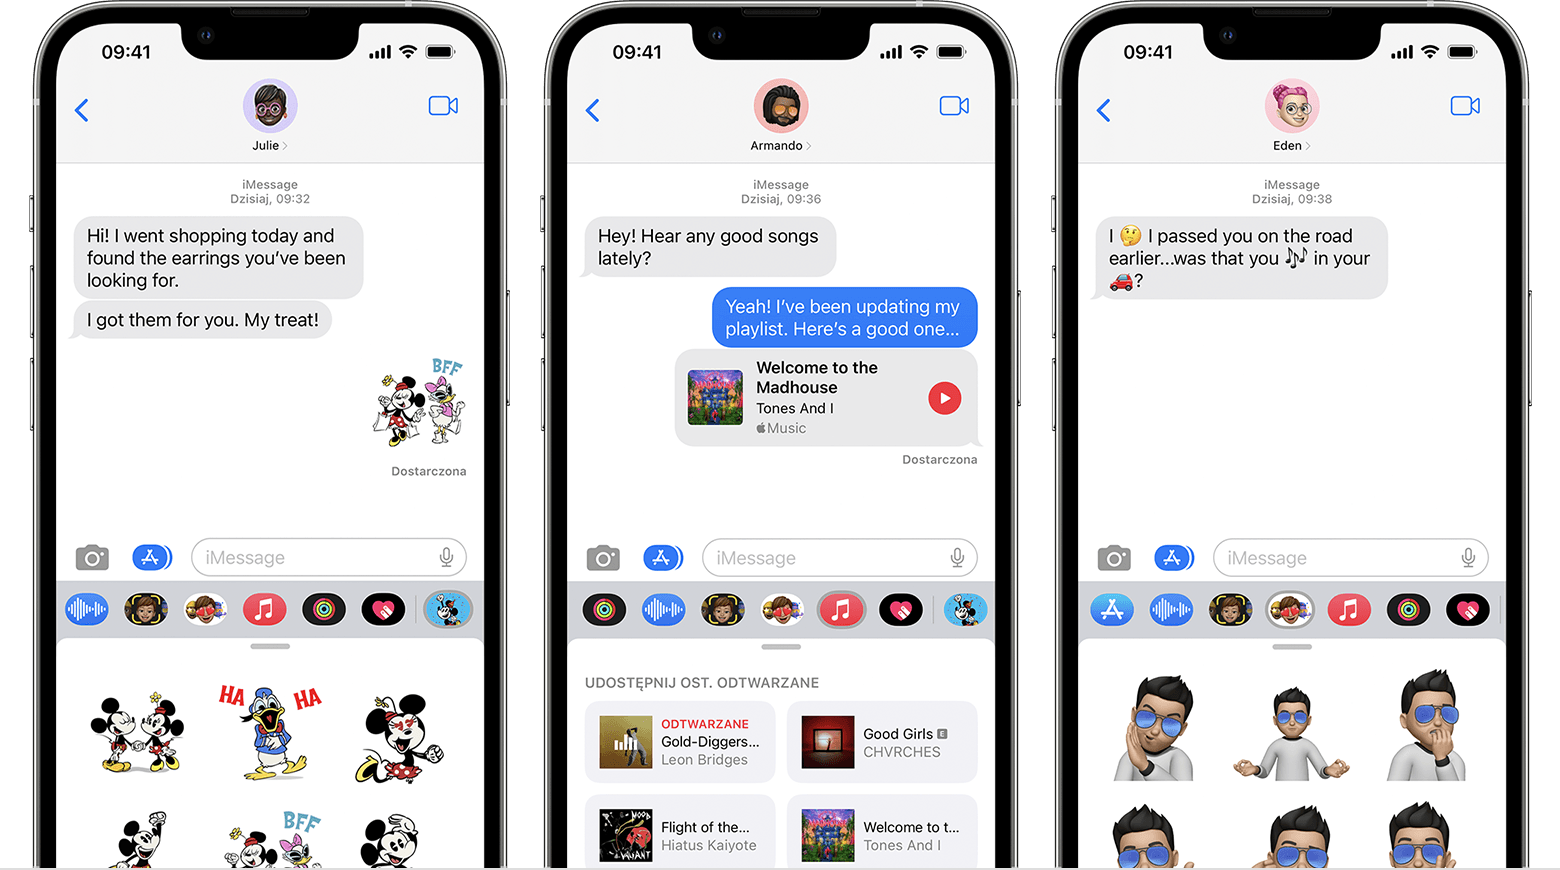 Telefon iPhone wyświetlający aplikacje dla iMessage w rozmowie wiadomości